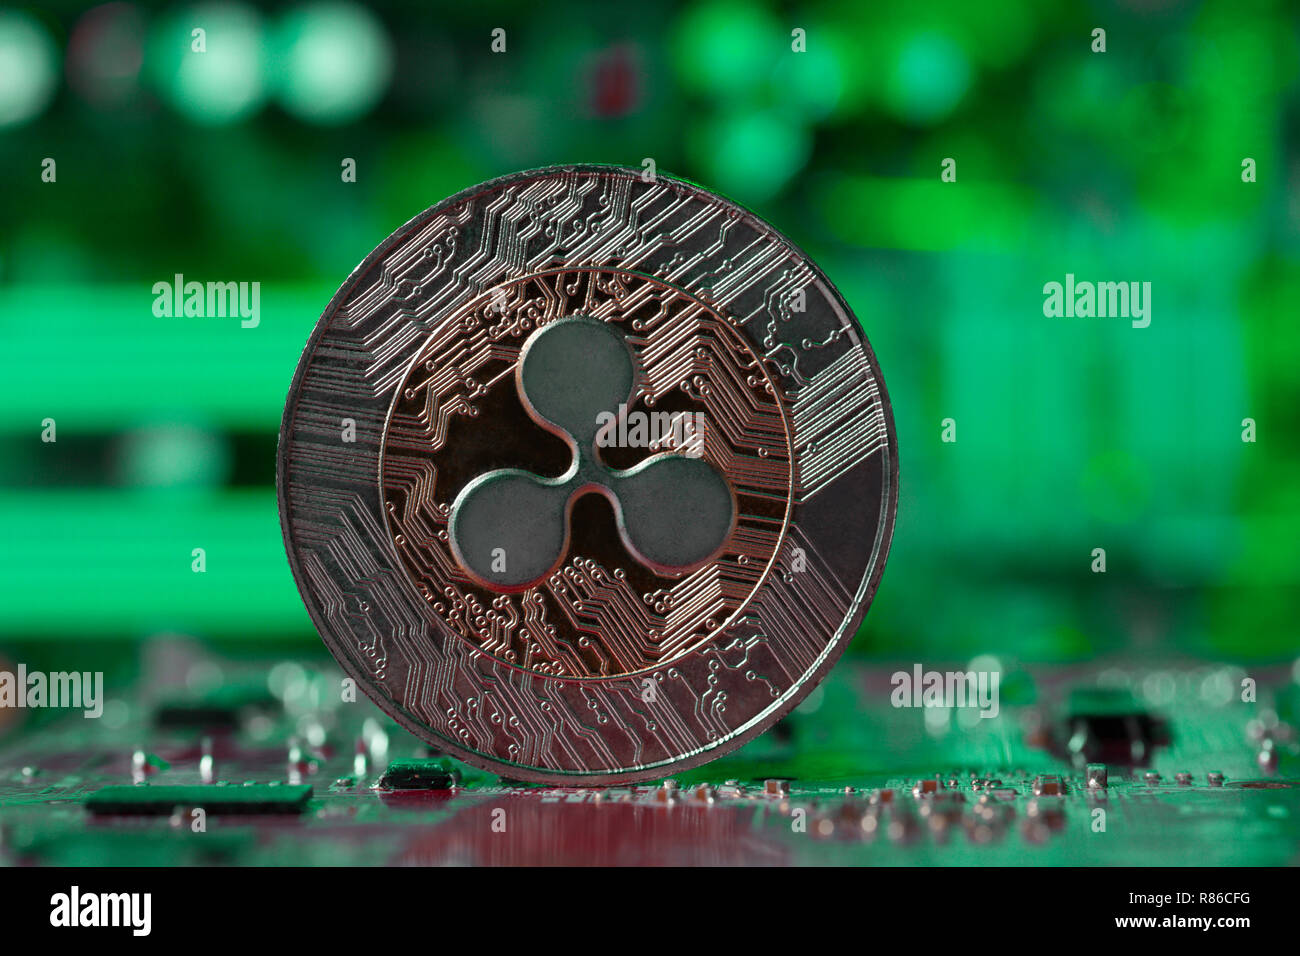 Welligkeit Münze auf Intergrated Circuit und Grünen verschwommenen Hintergrund Stockfoto